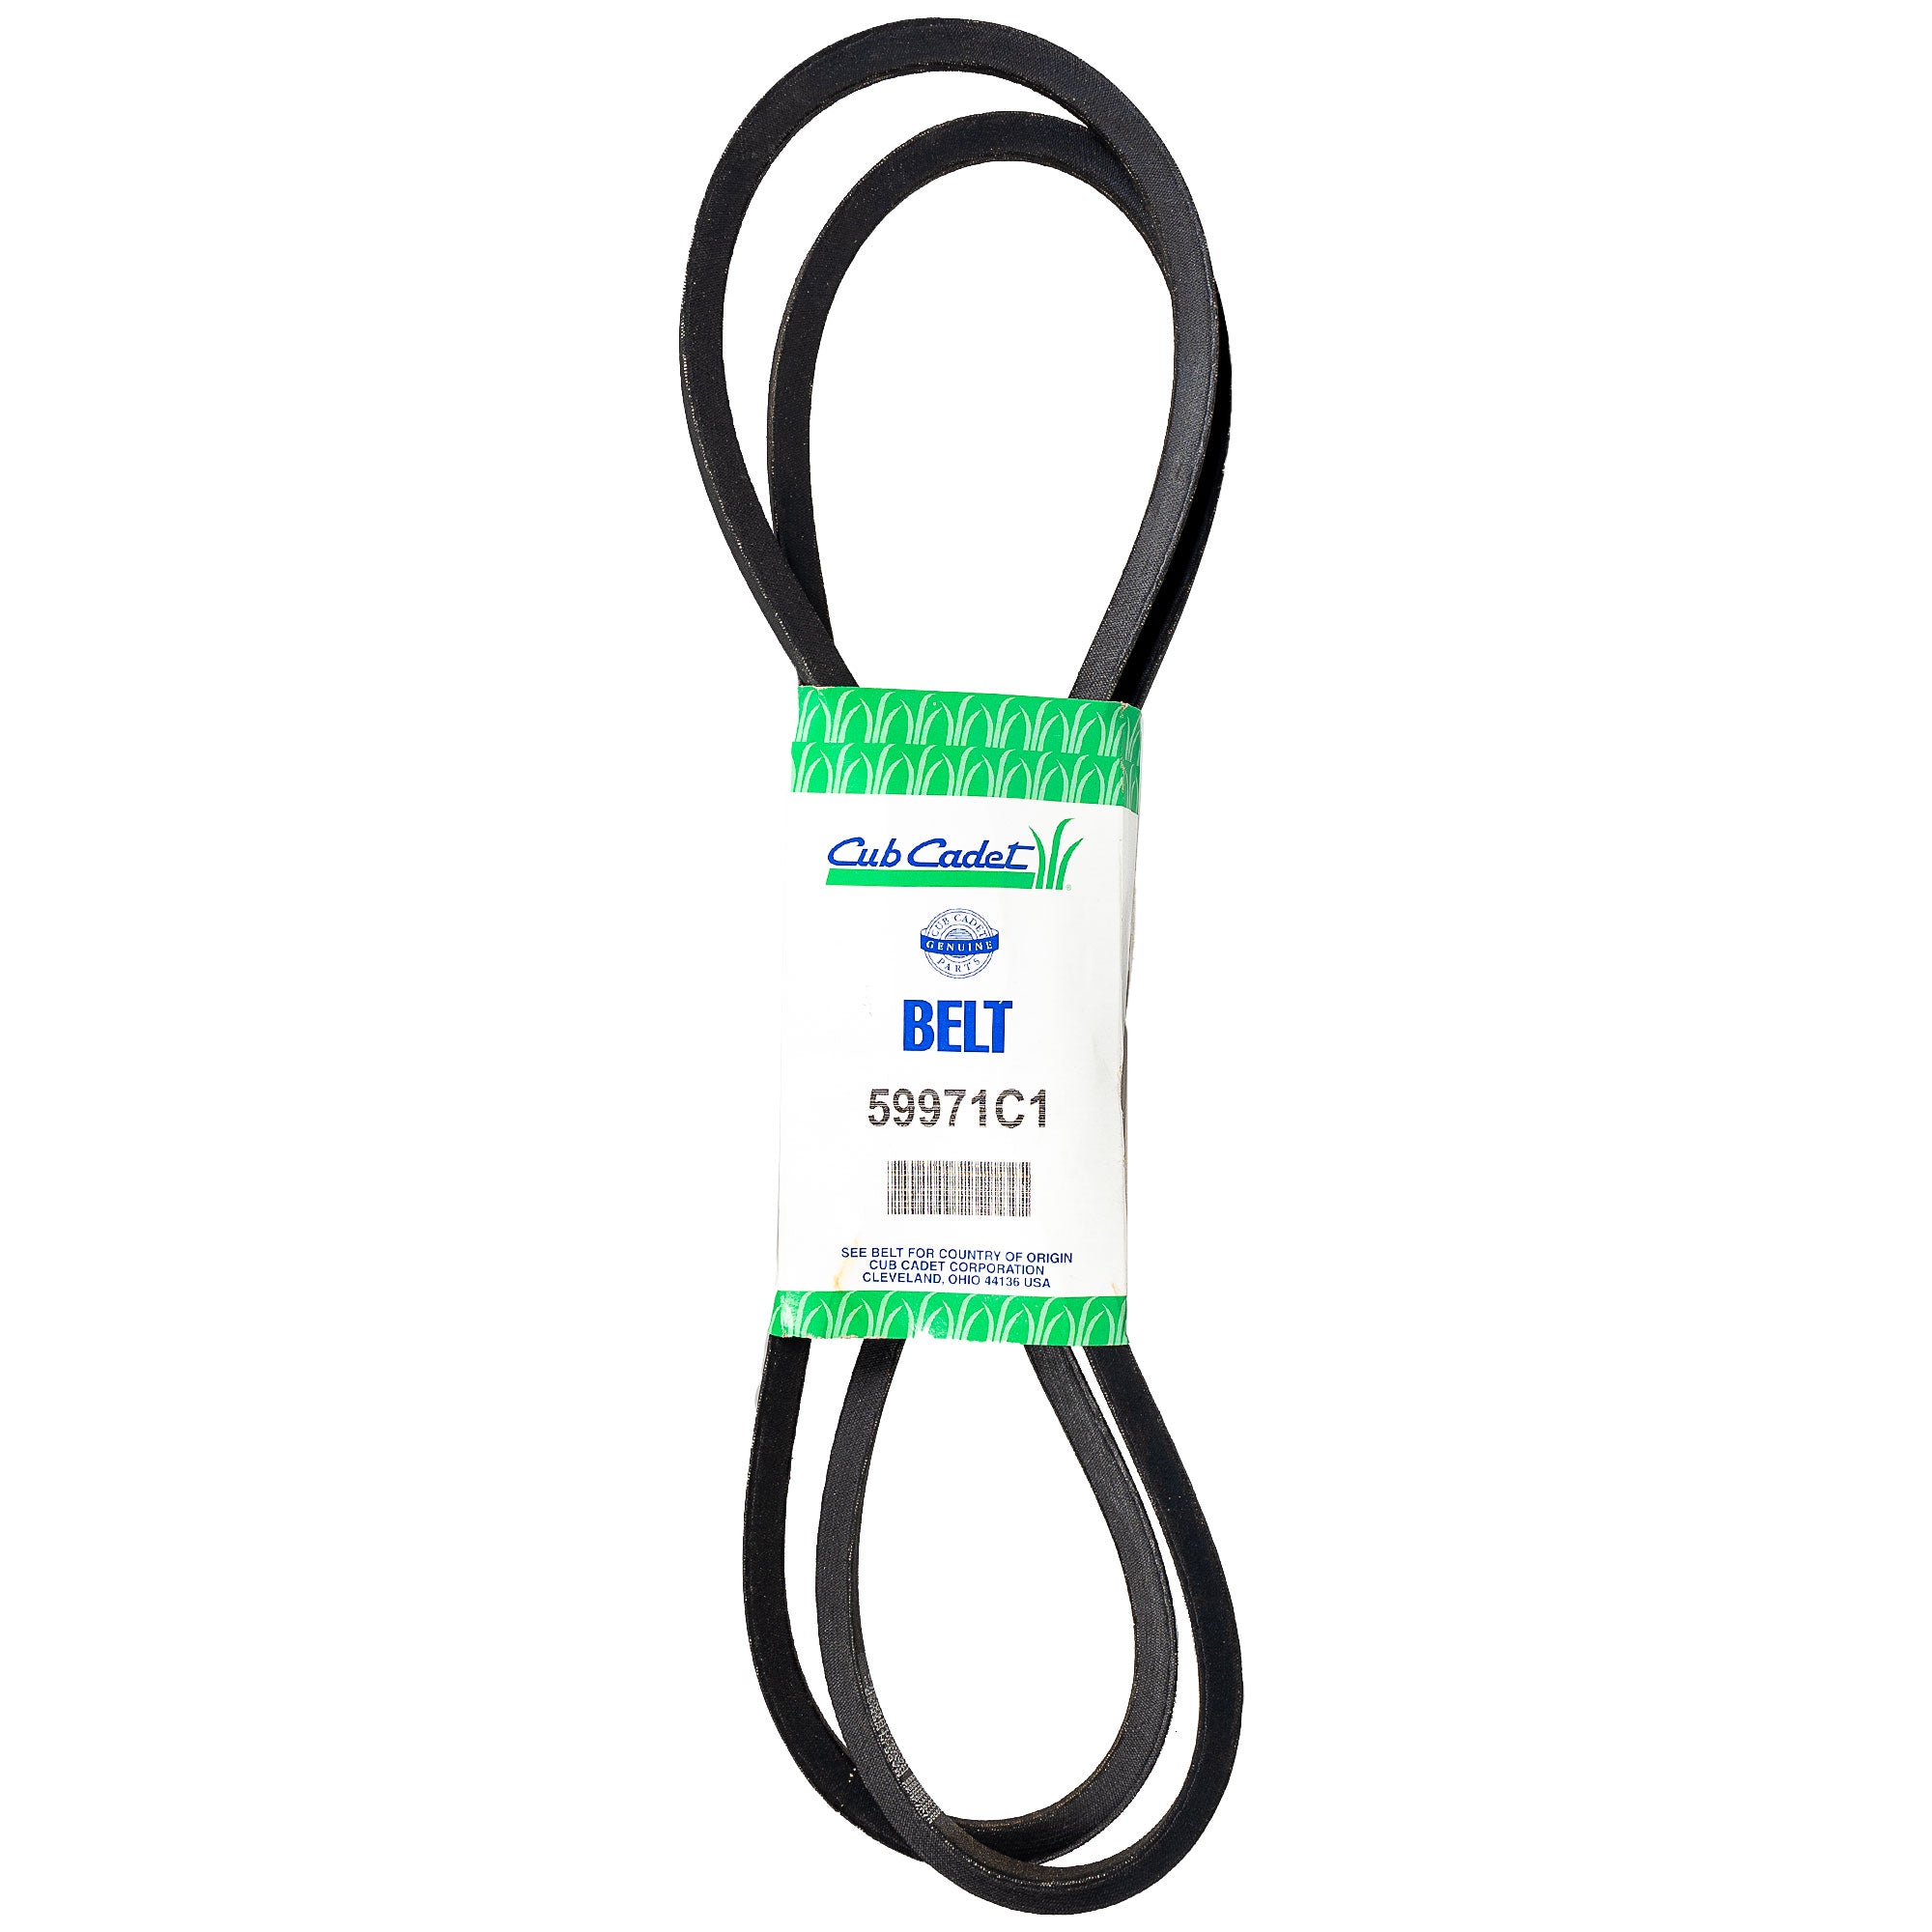 CUB CADET IH-59971-C1 Belt